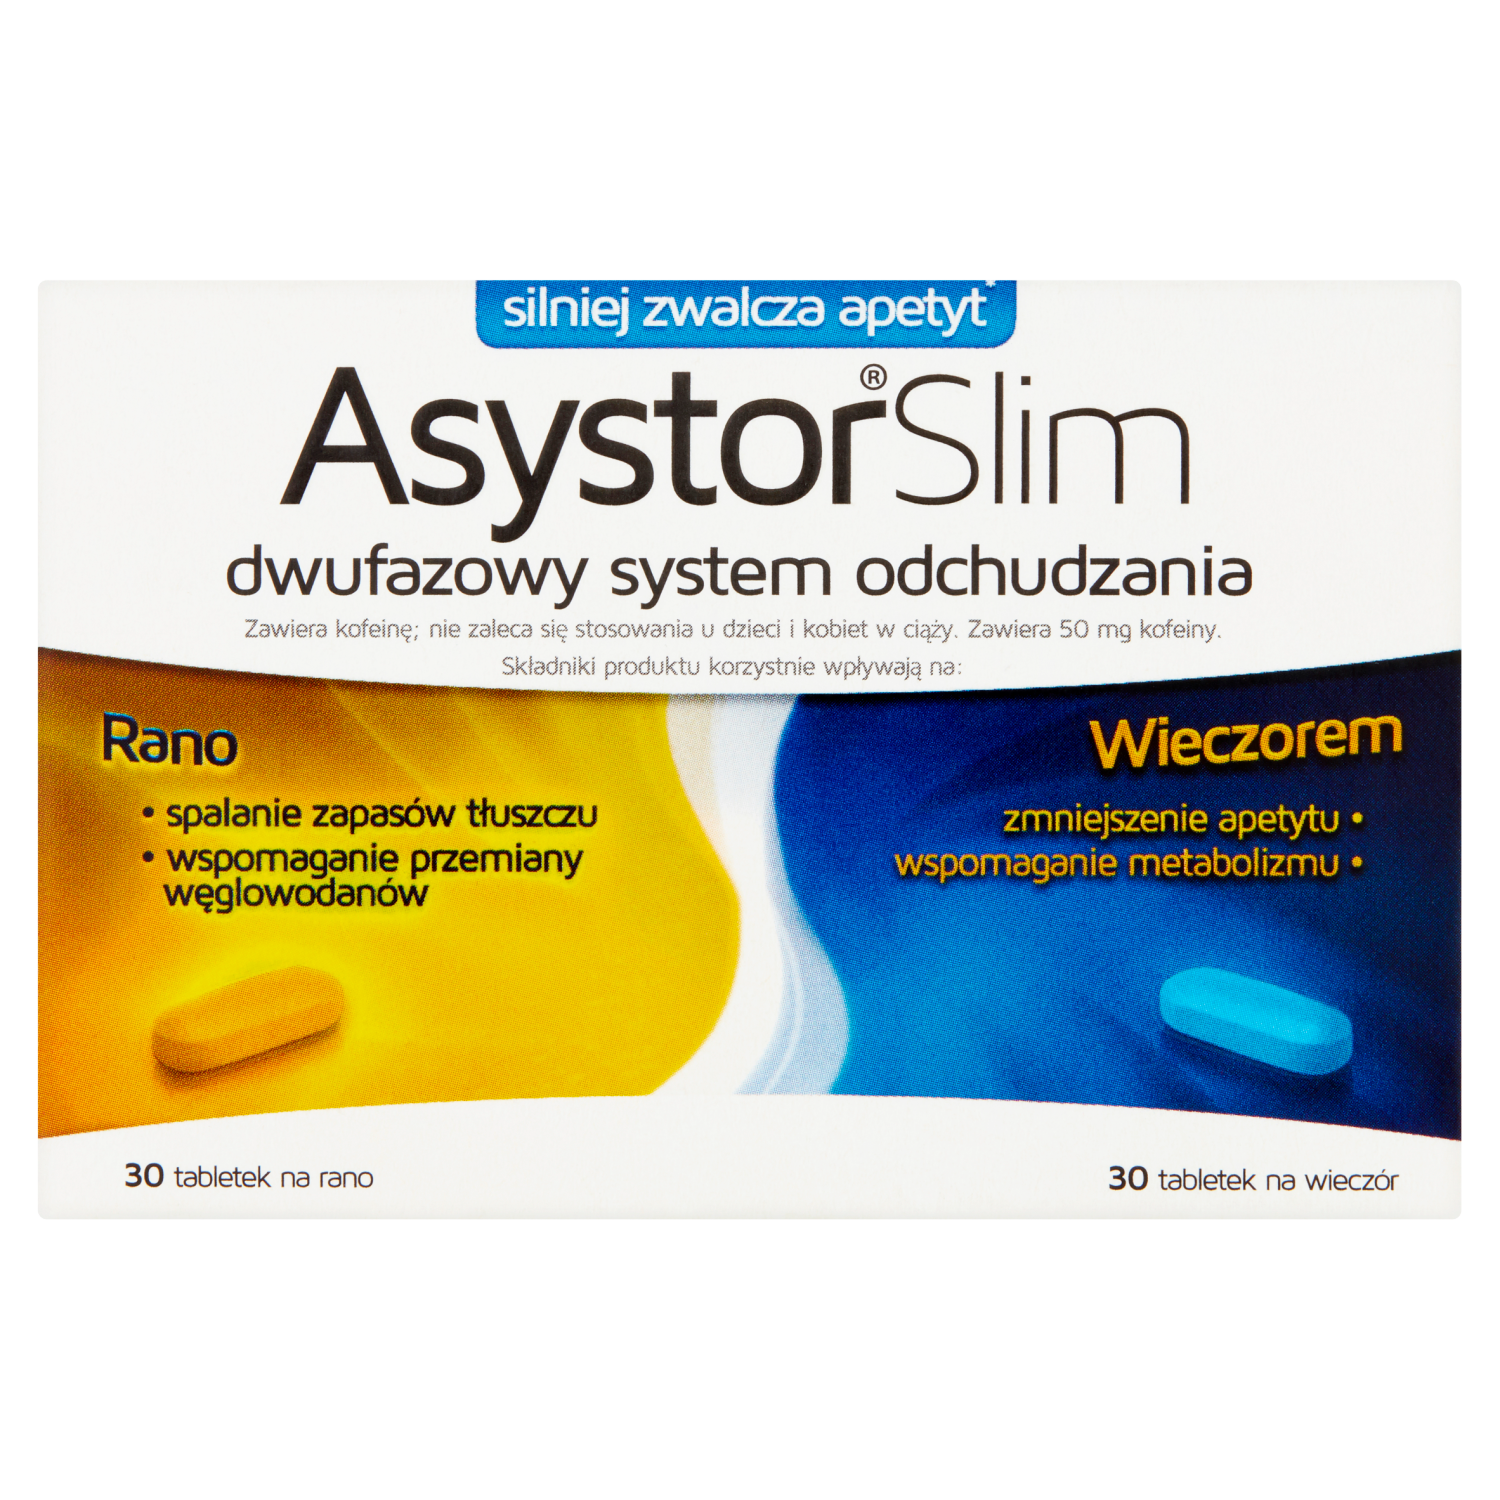 Asystor Slim биологически активная добавка, 60 таблеток/1 упаковка